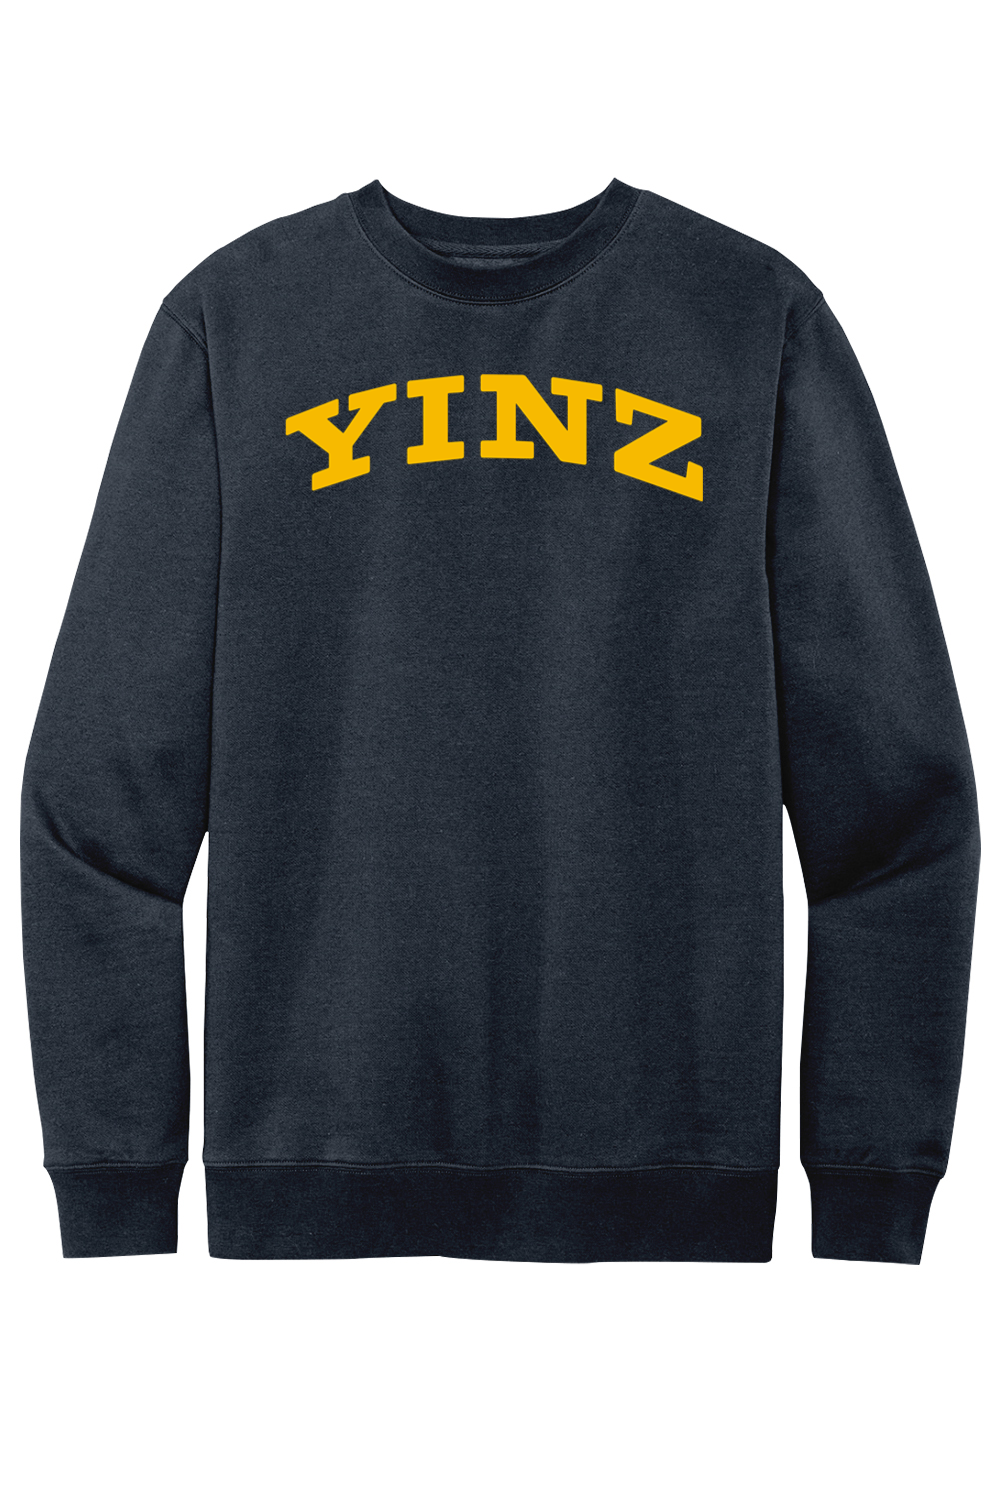 YINZ - Collegiate - Fleece Crewneck Sweatshirt - Yinzylvania